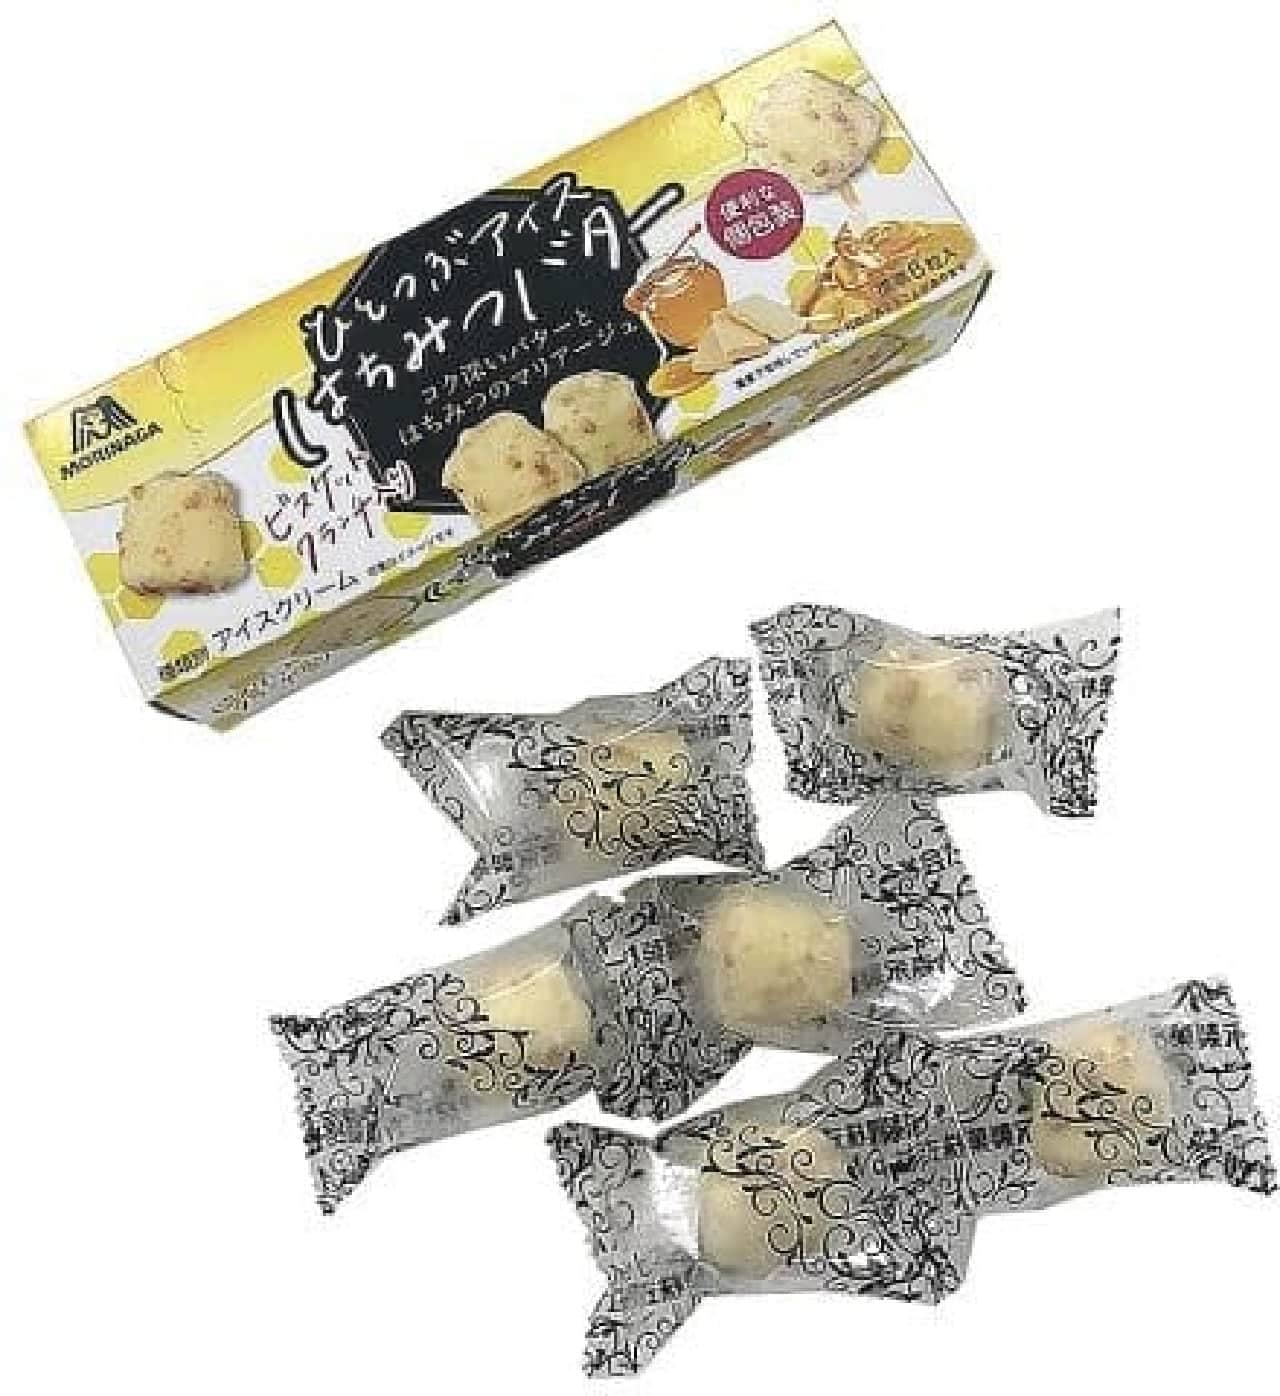 7-ELEVEN "Morinaga Ichibu Ice Cream Honey Butter